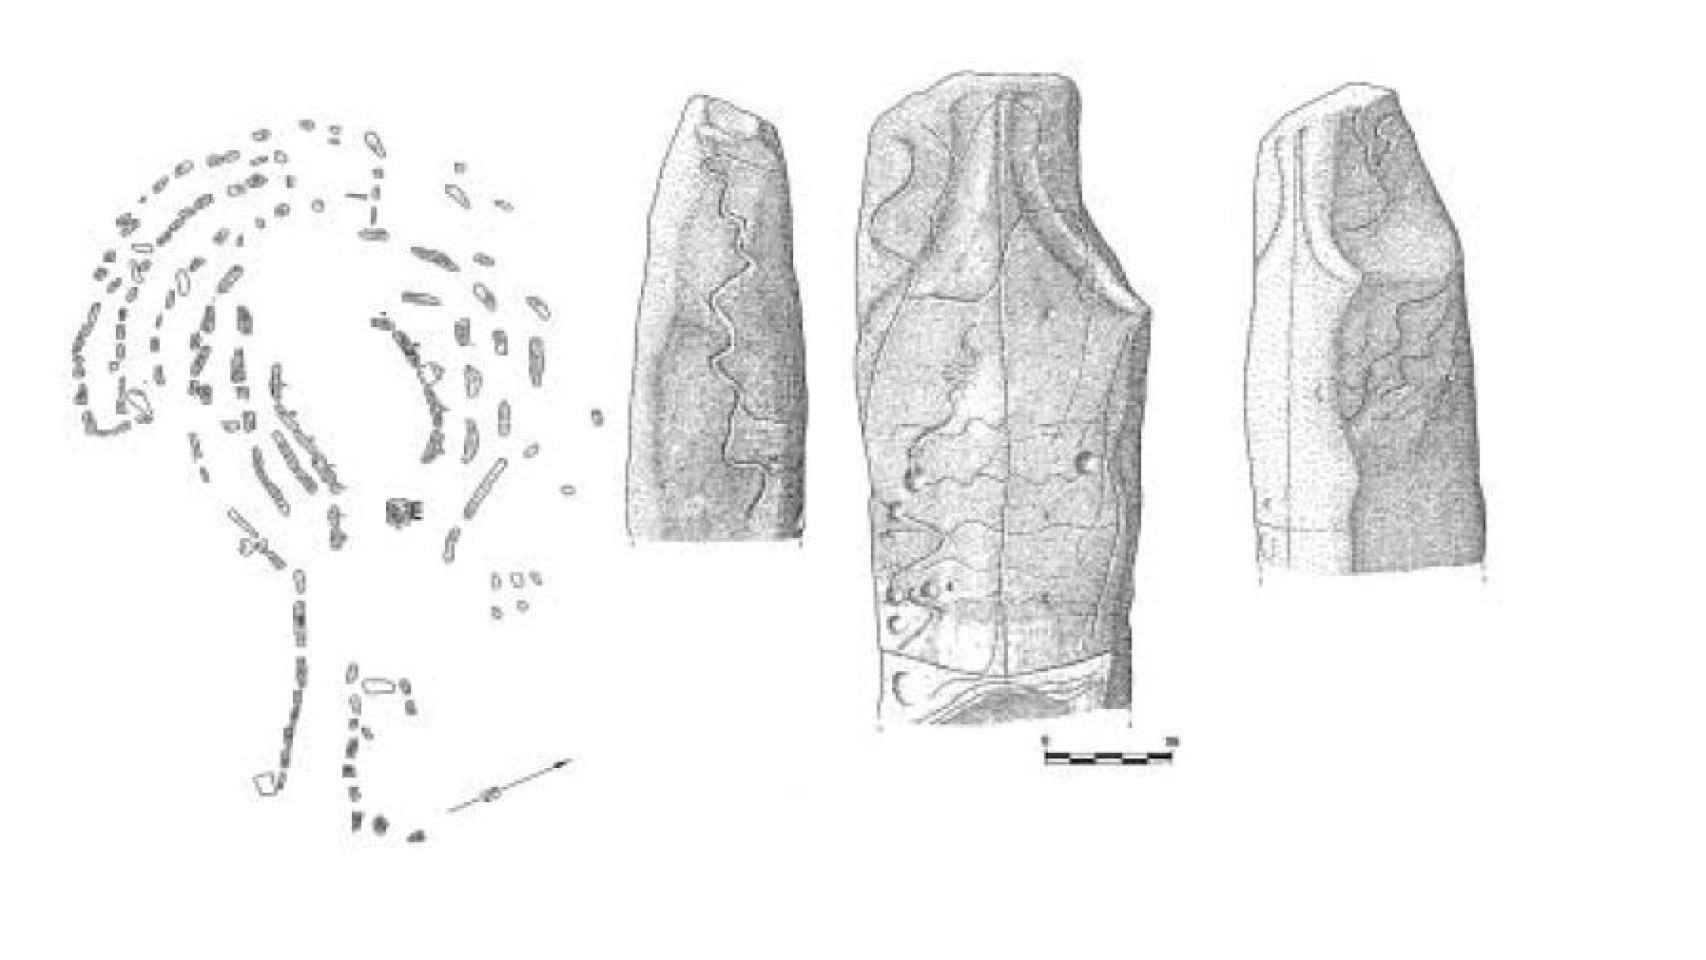 Planta del dolmen de Guadalperal y dibujos del menhir y sus inscripciones talladas.